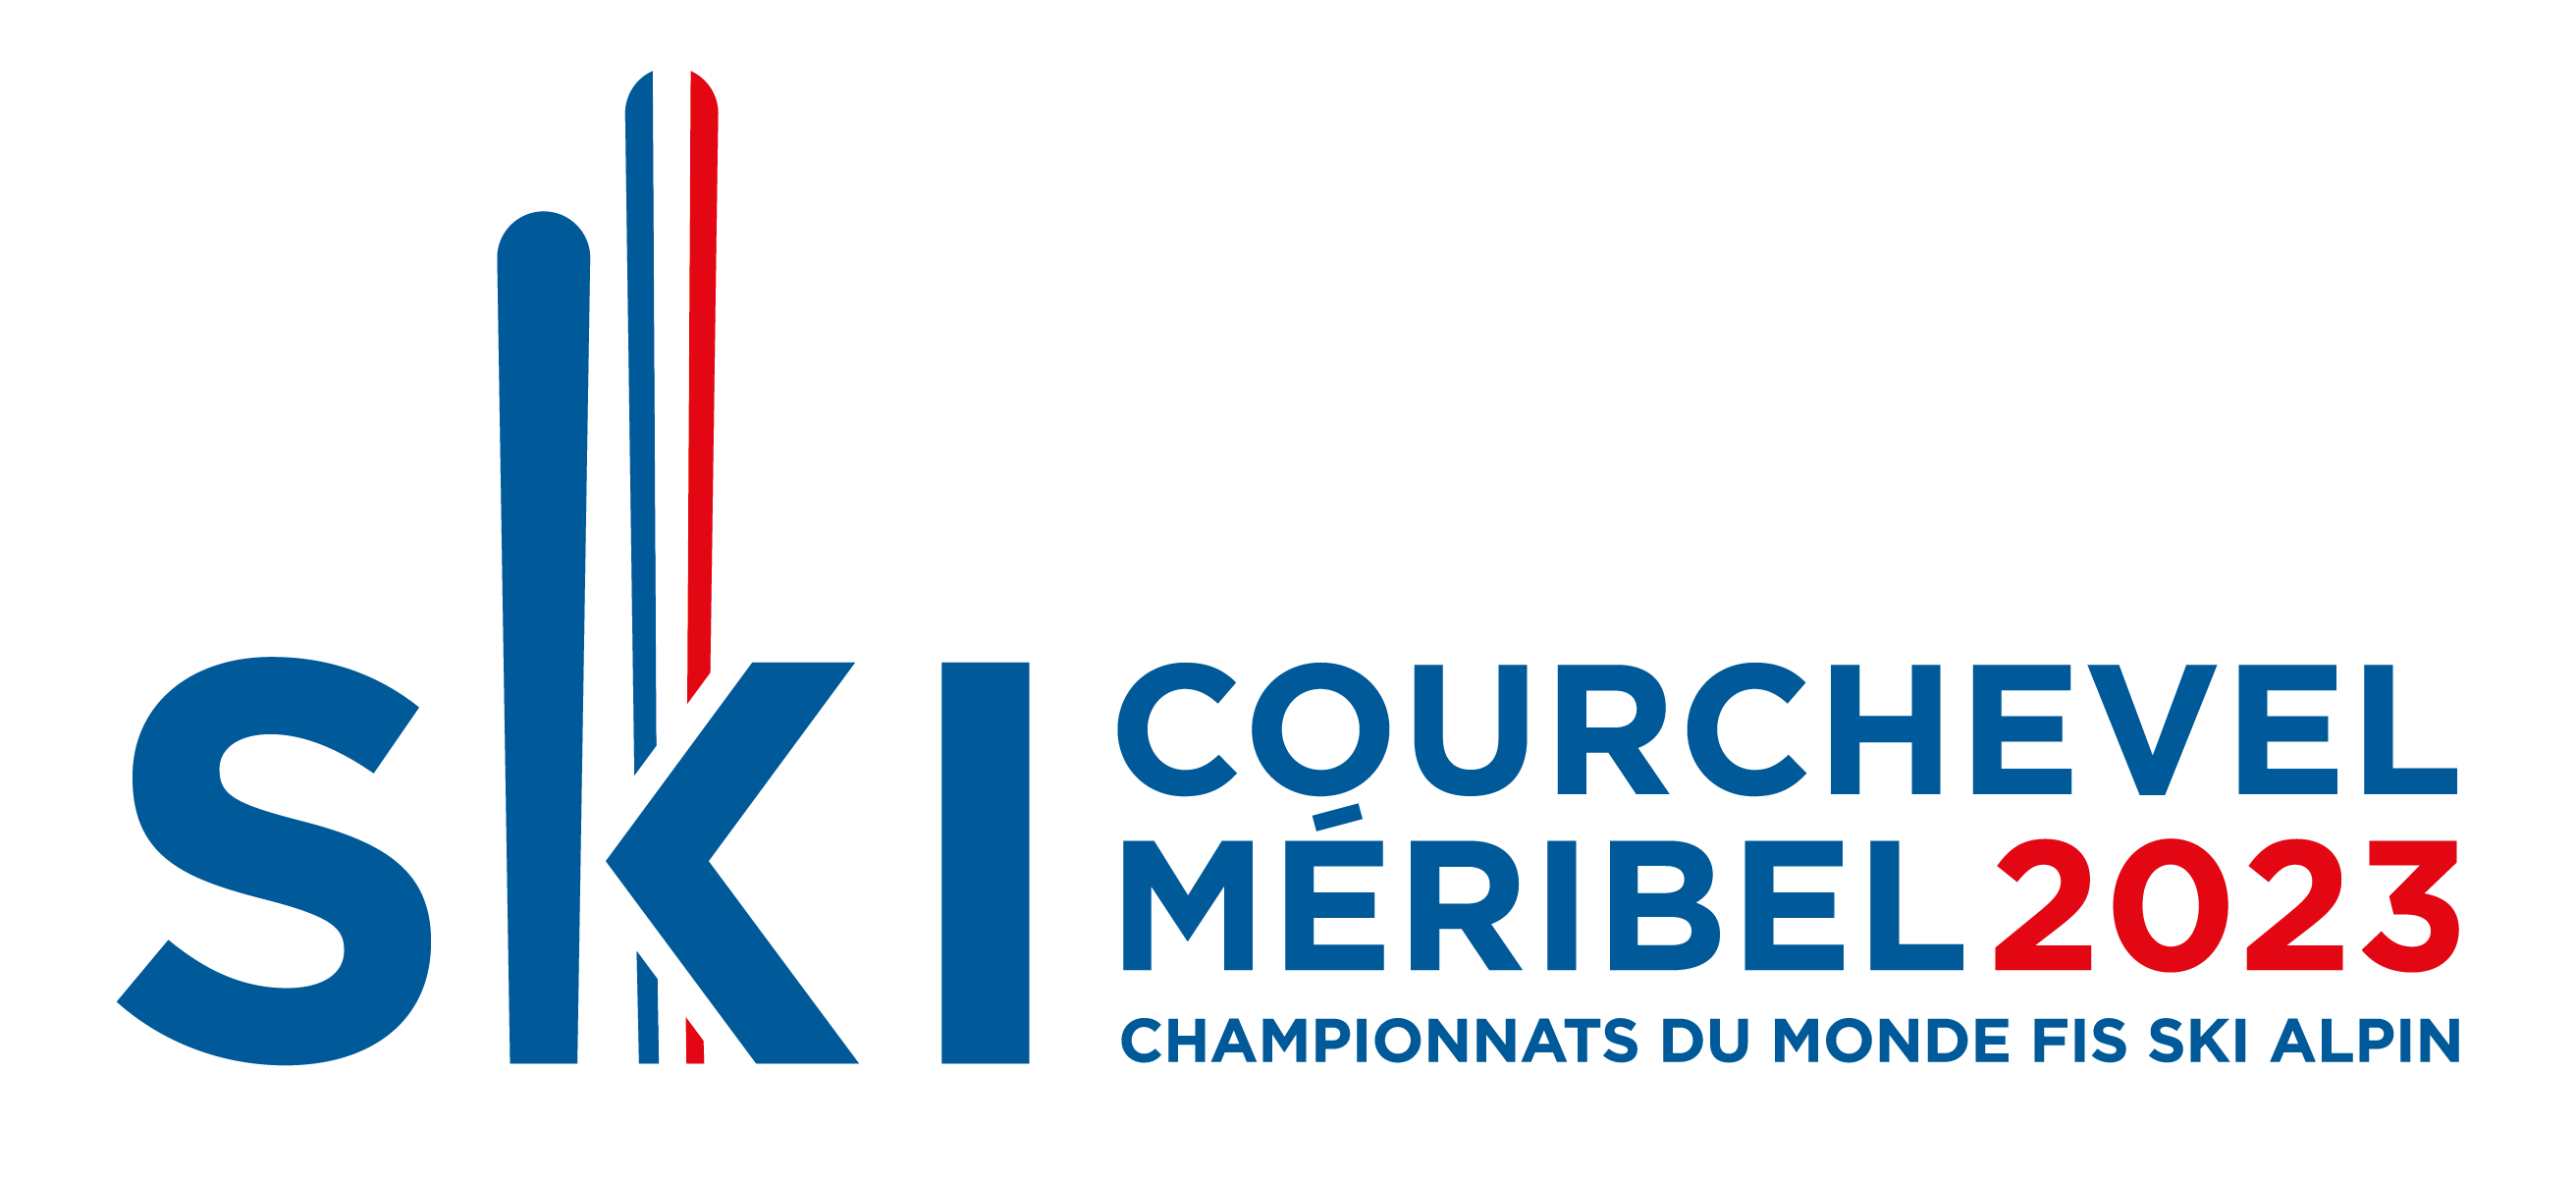 courchevel meribel2023 logo